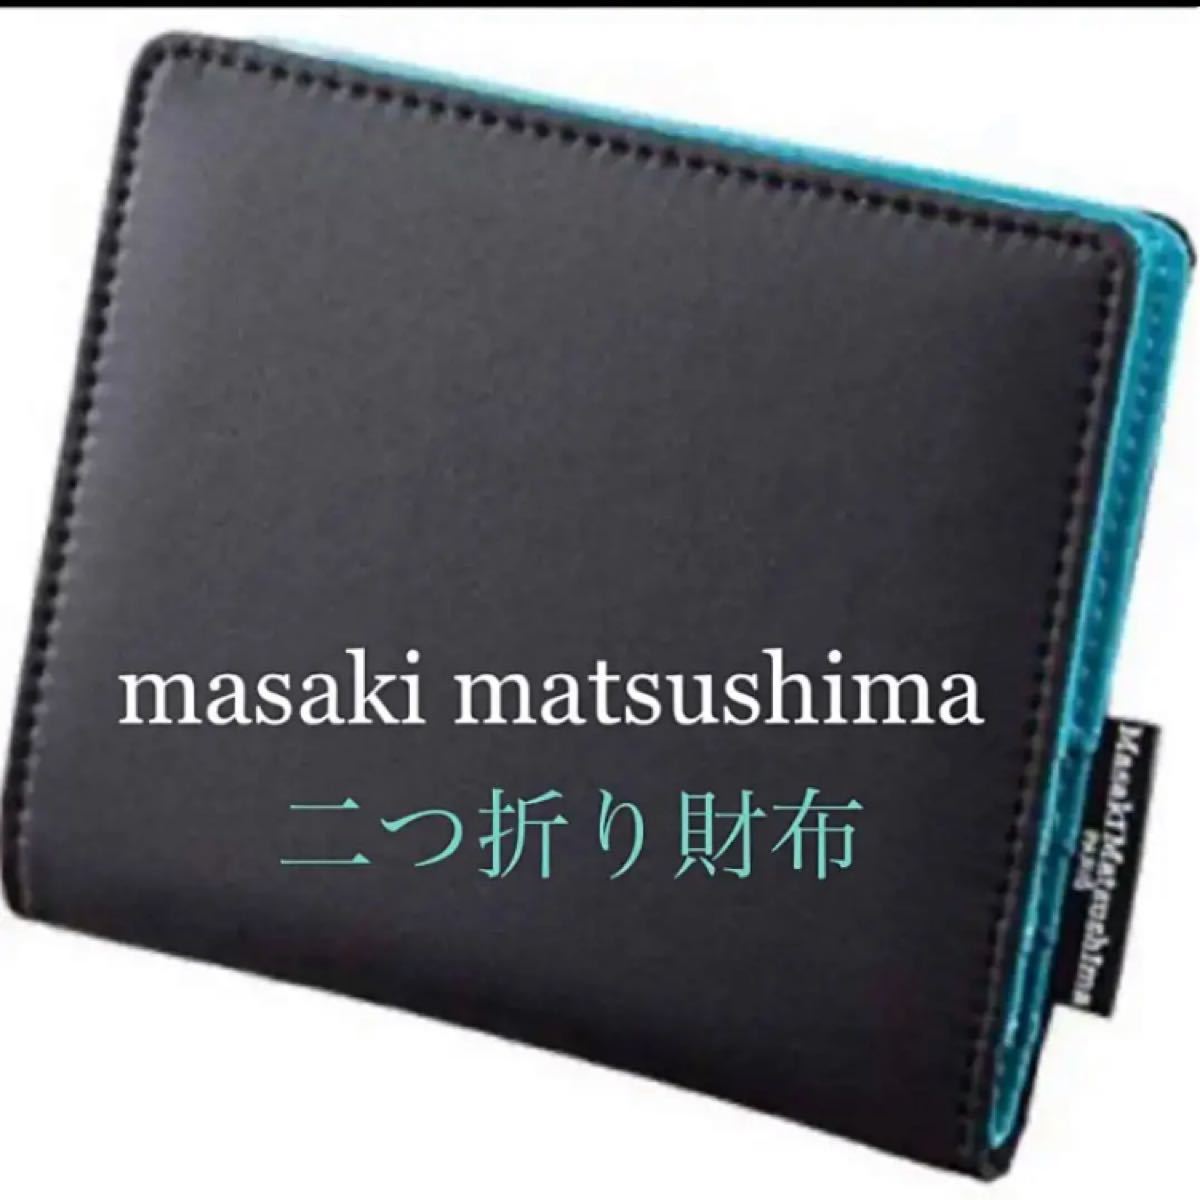 Paypayフリマ 新品 Masaki Matsushima 二つ折り 財布 マサキマツシマ 小銭入れ サイフ 2つ折り シンプル ブラック 黒